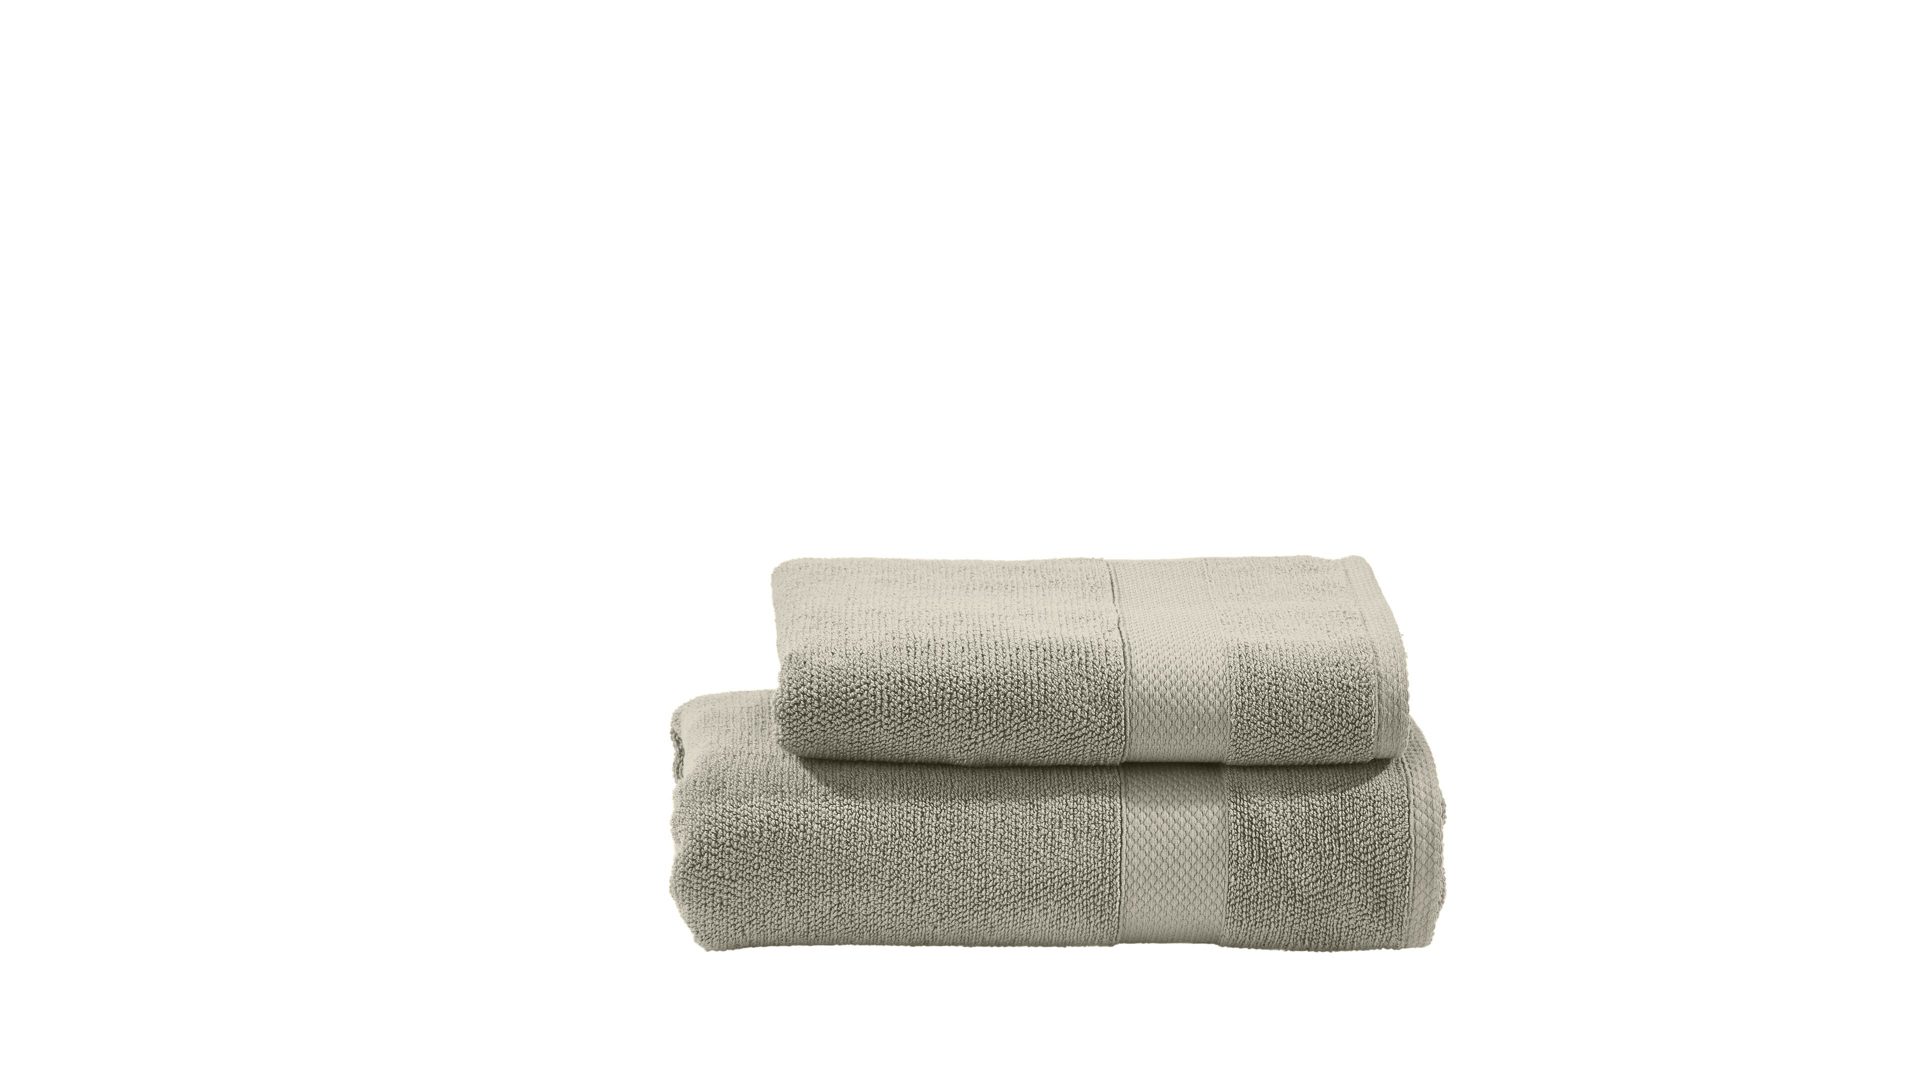 Handtuch-Set Done.® aus Stoff in Beige done.® Handtuch-Set Deluxe bzw. Heimtextilien taupefarbene Baumwolle  – zweiteilig